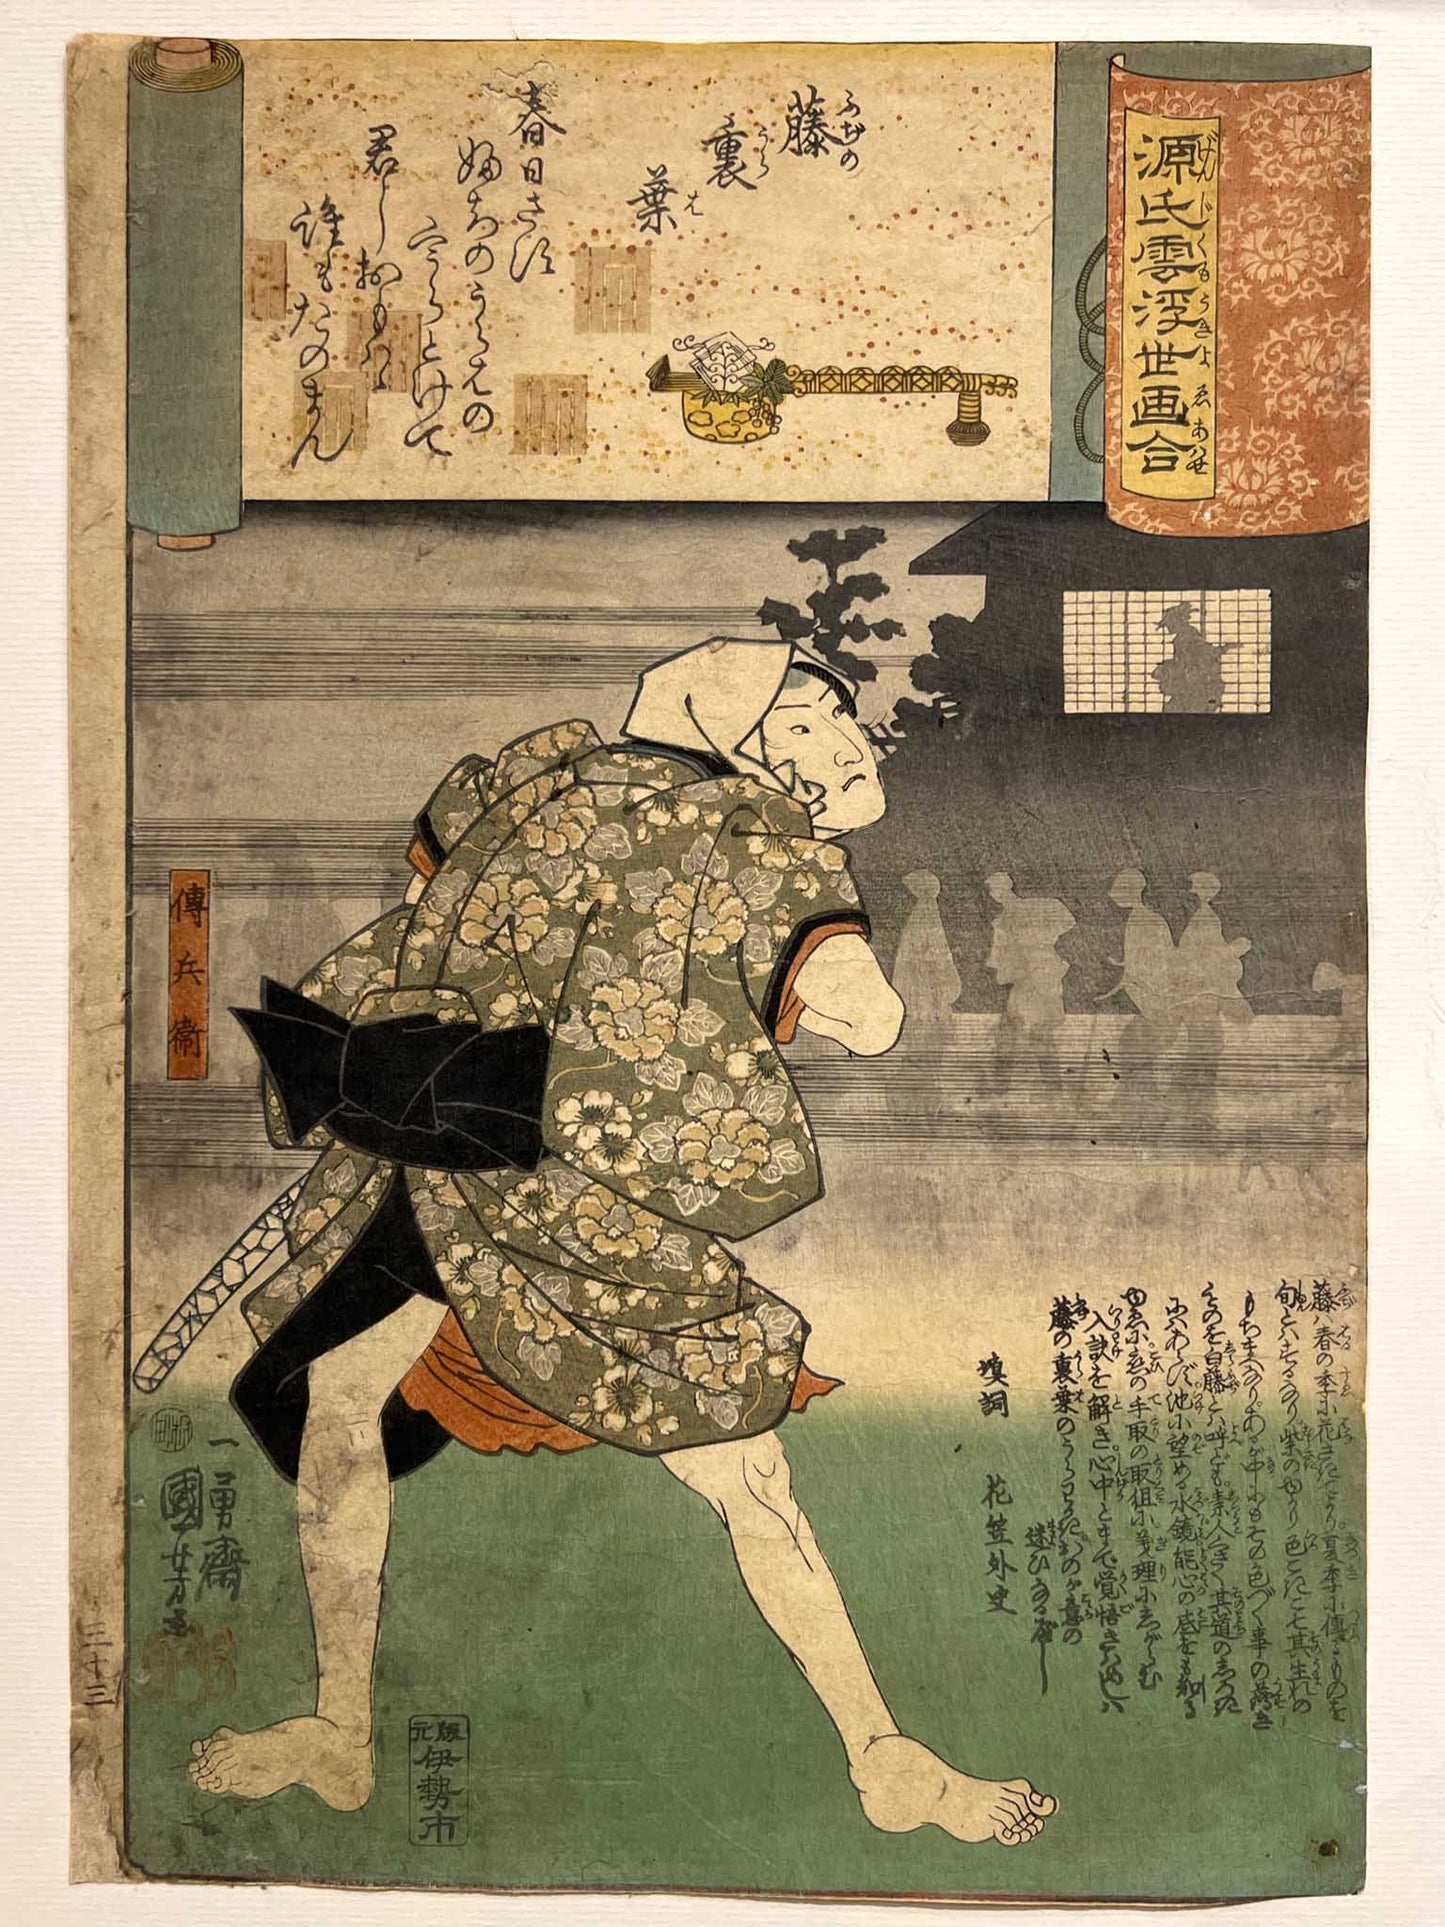 Estampe japonaise kuniyoshi serie dit du genji un homme de dos, une geisha en ombre chinoise dans un cartouche